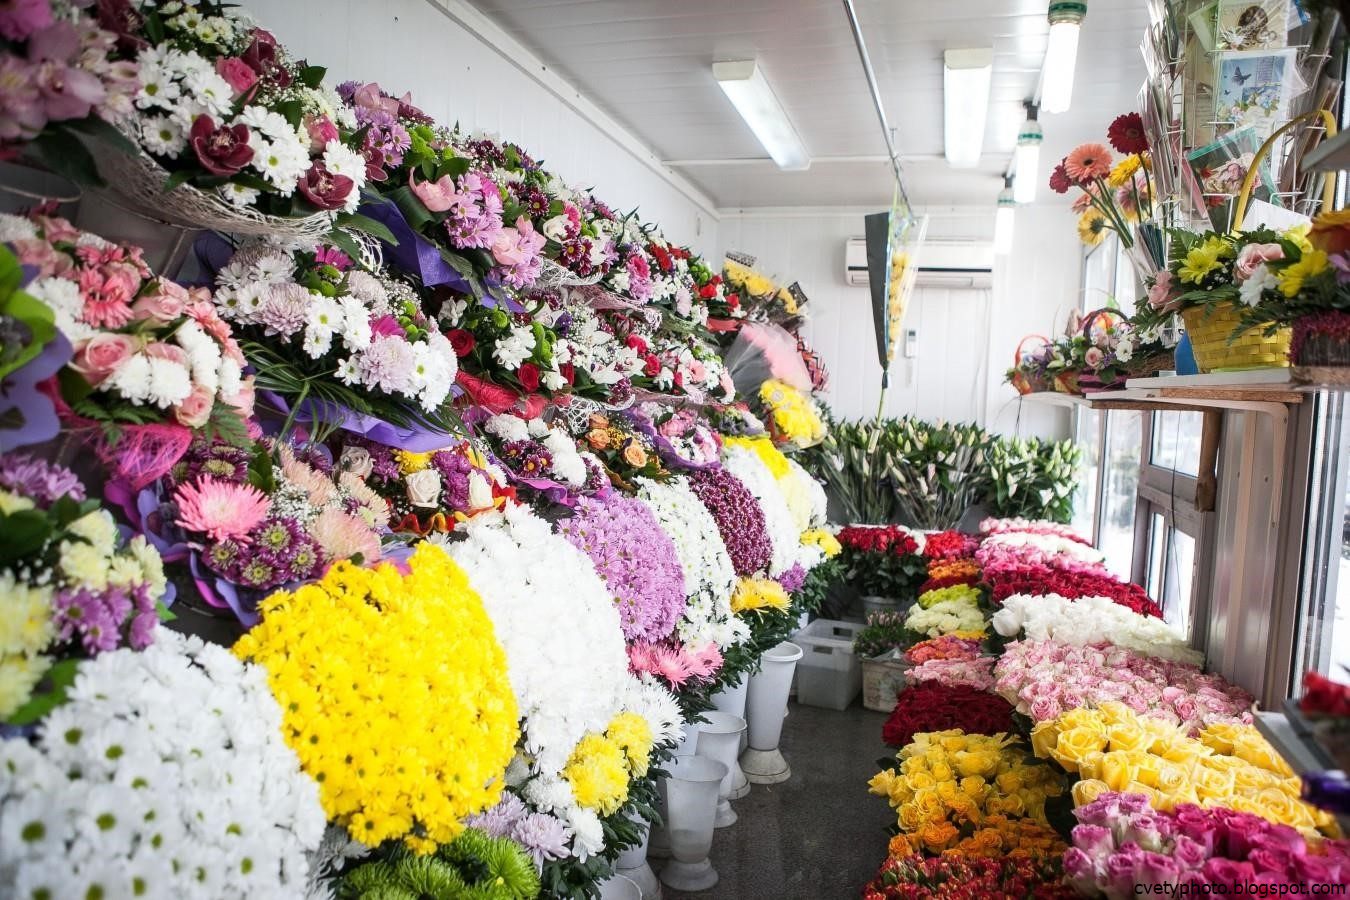 Цветы на срез. Цветы в цветочном магазине. Цветы магазинные. Свежесрезанные цветы. Хризантемы в Цветном магазине.